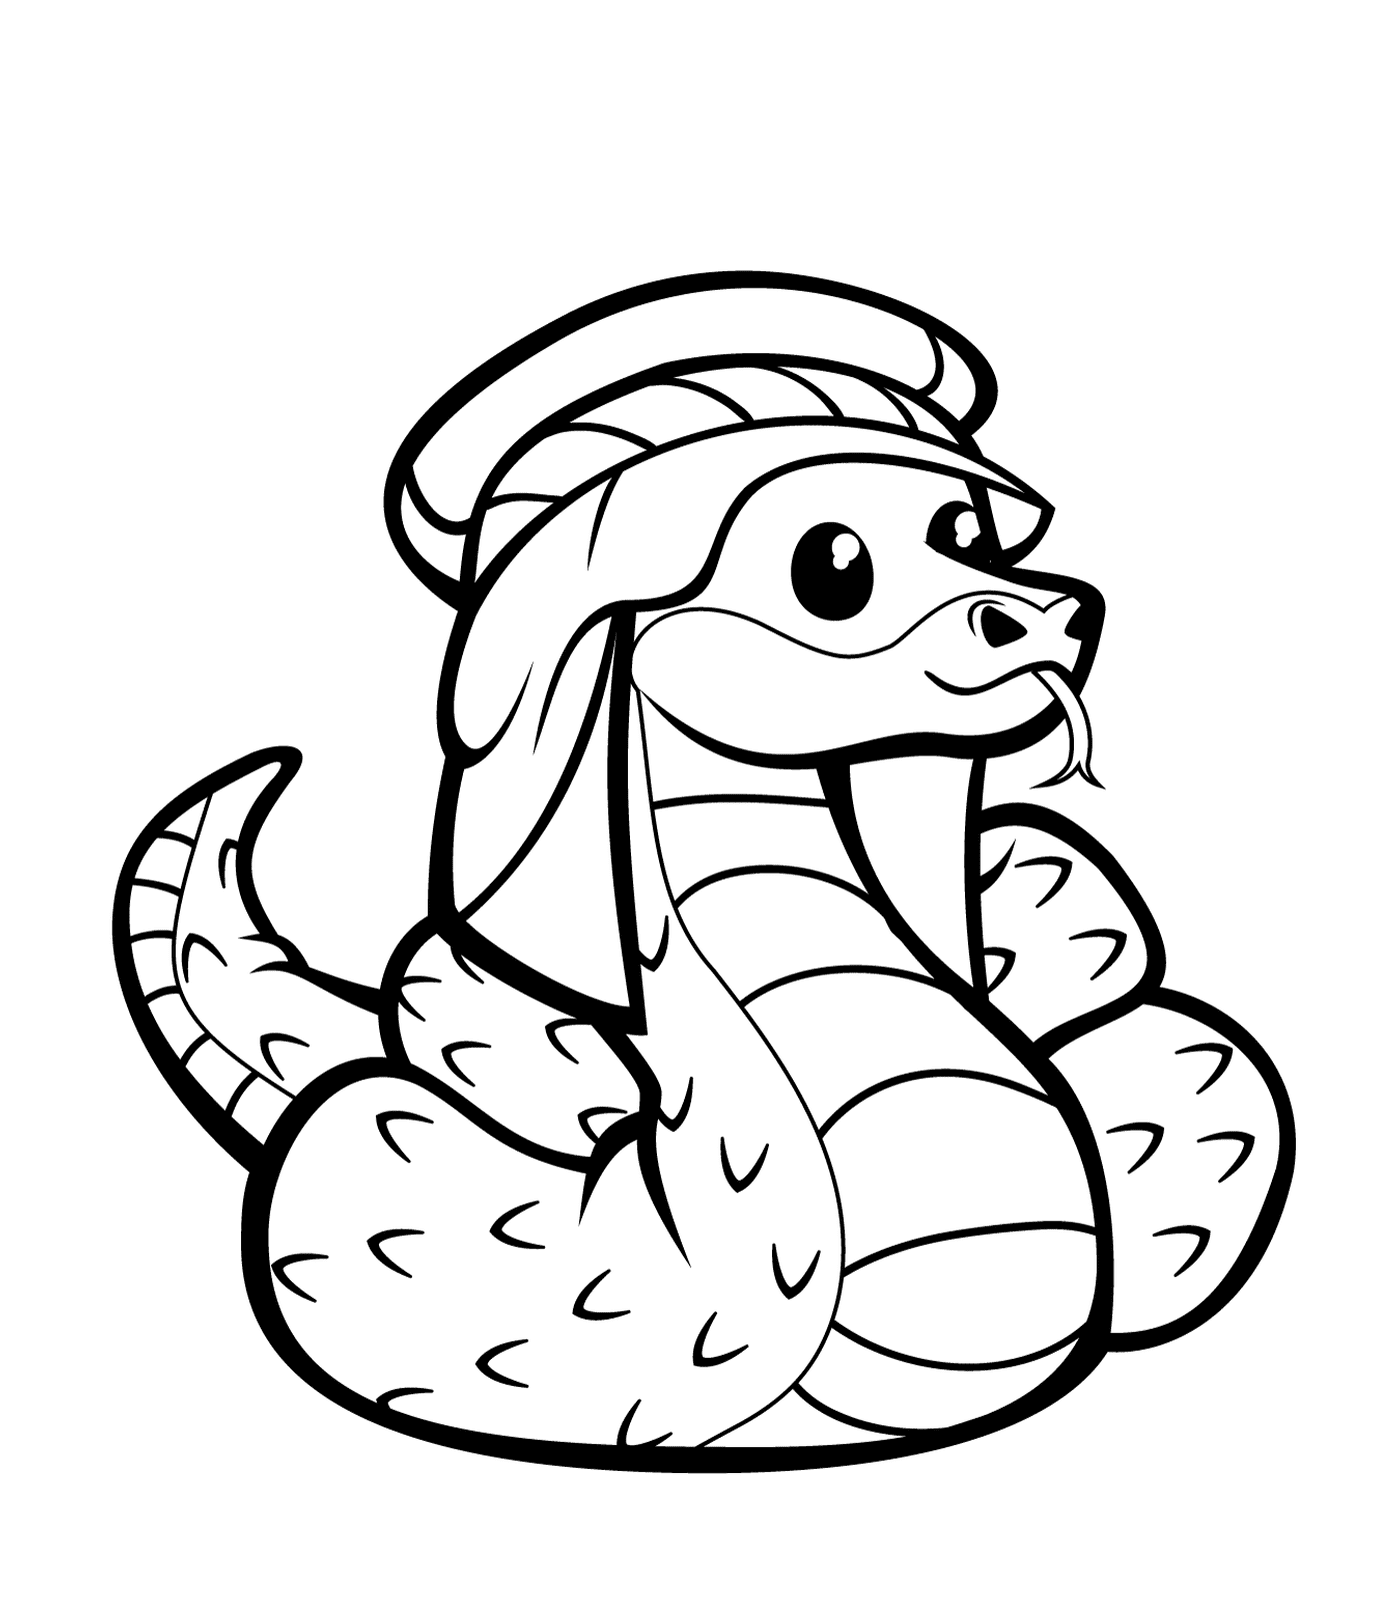   Un serpent portant un chapeau 